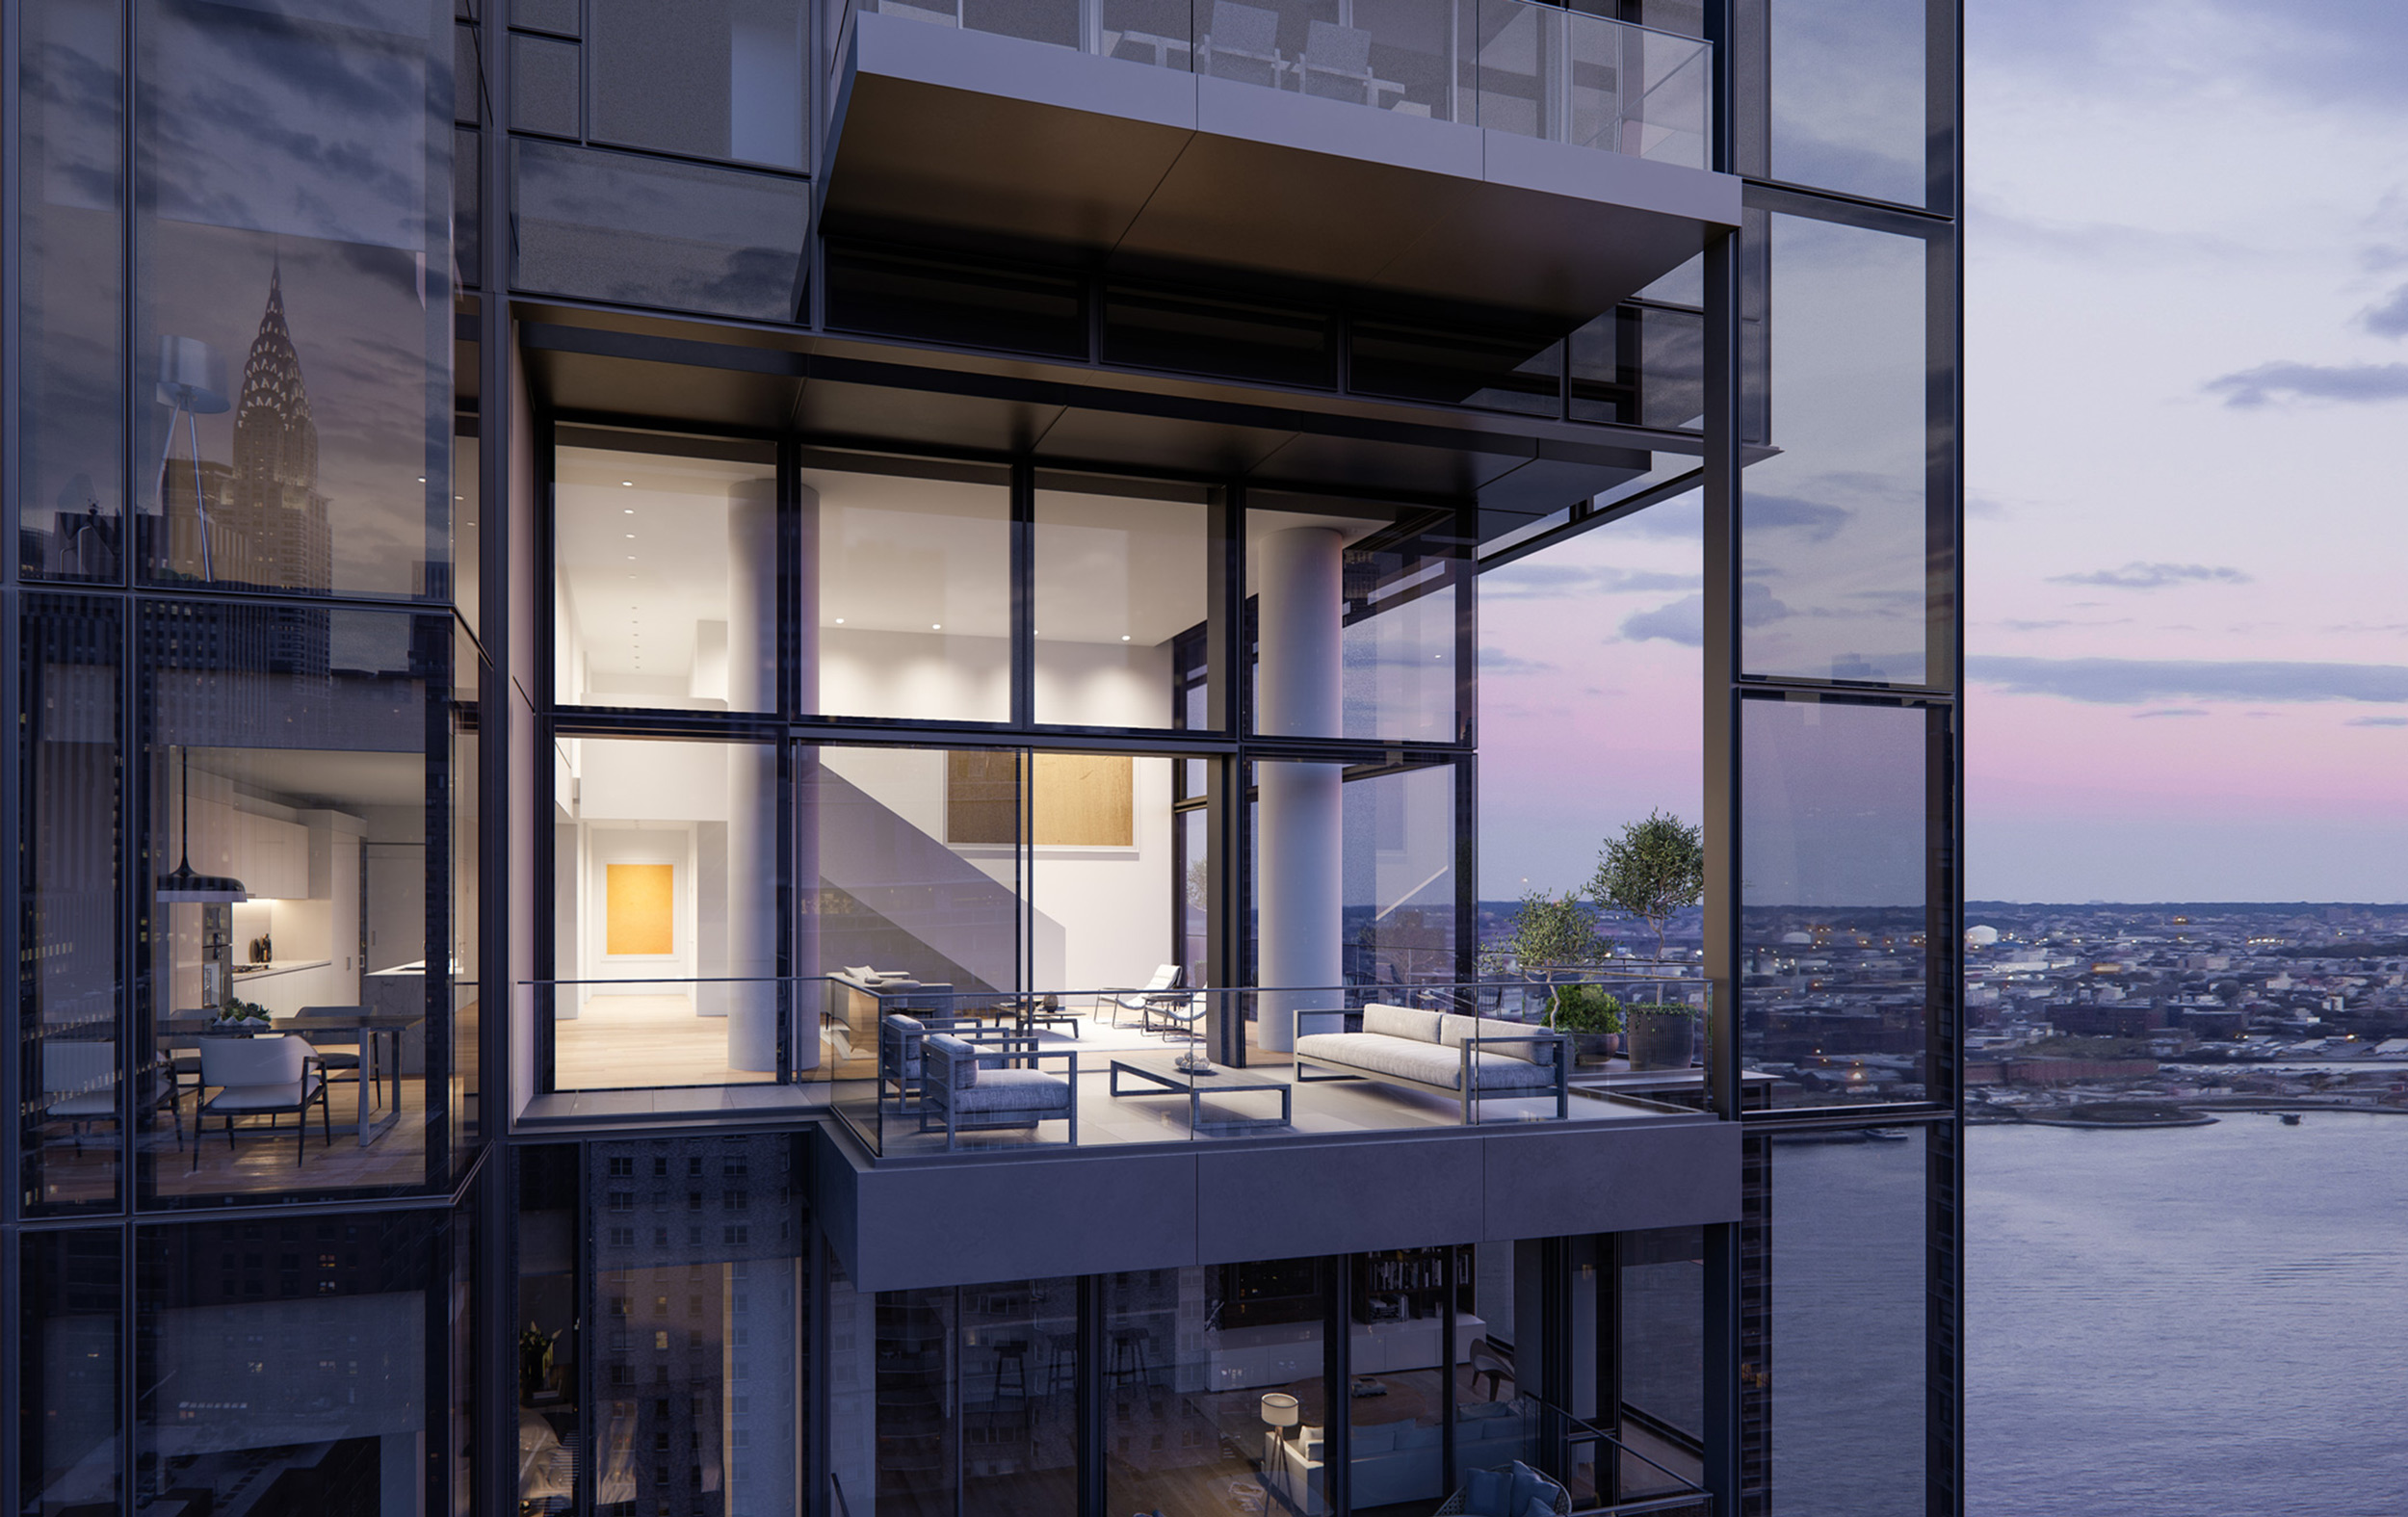 Luxury Manhattan Condo with Balcony